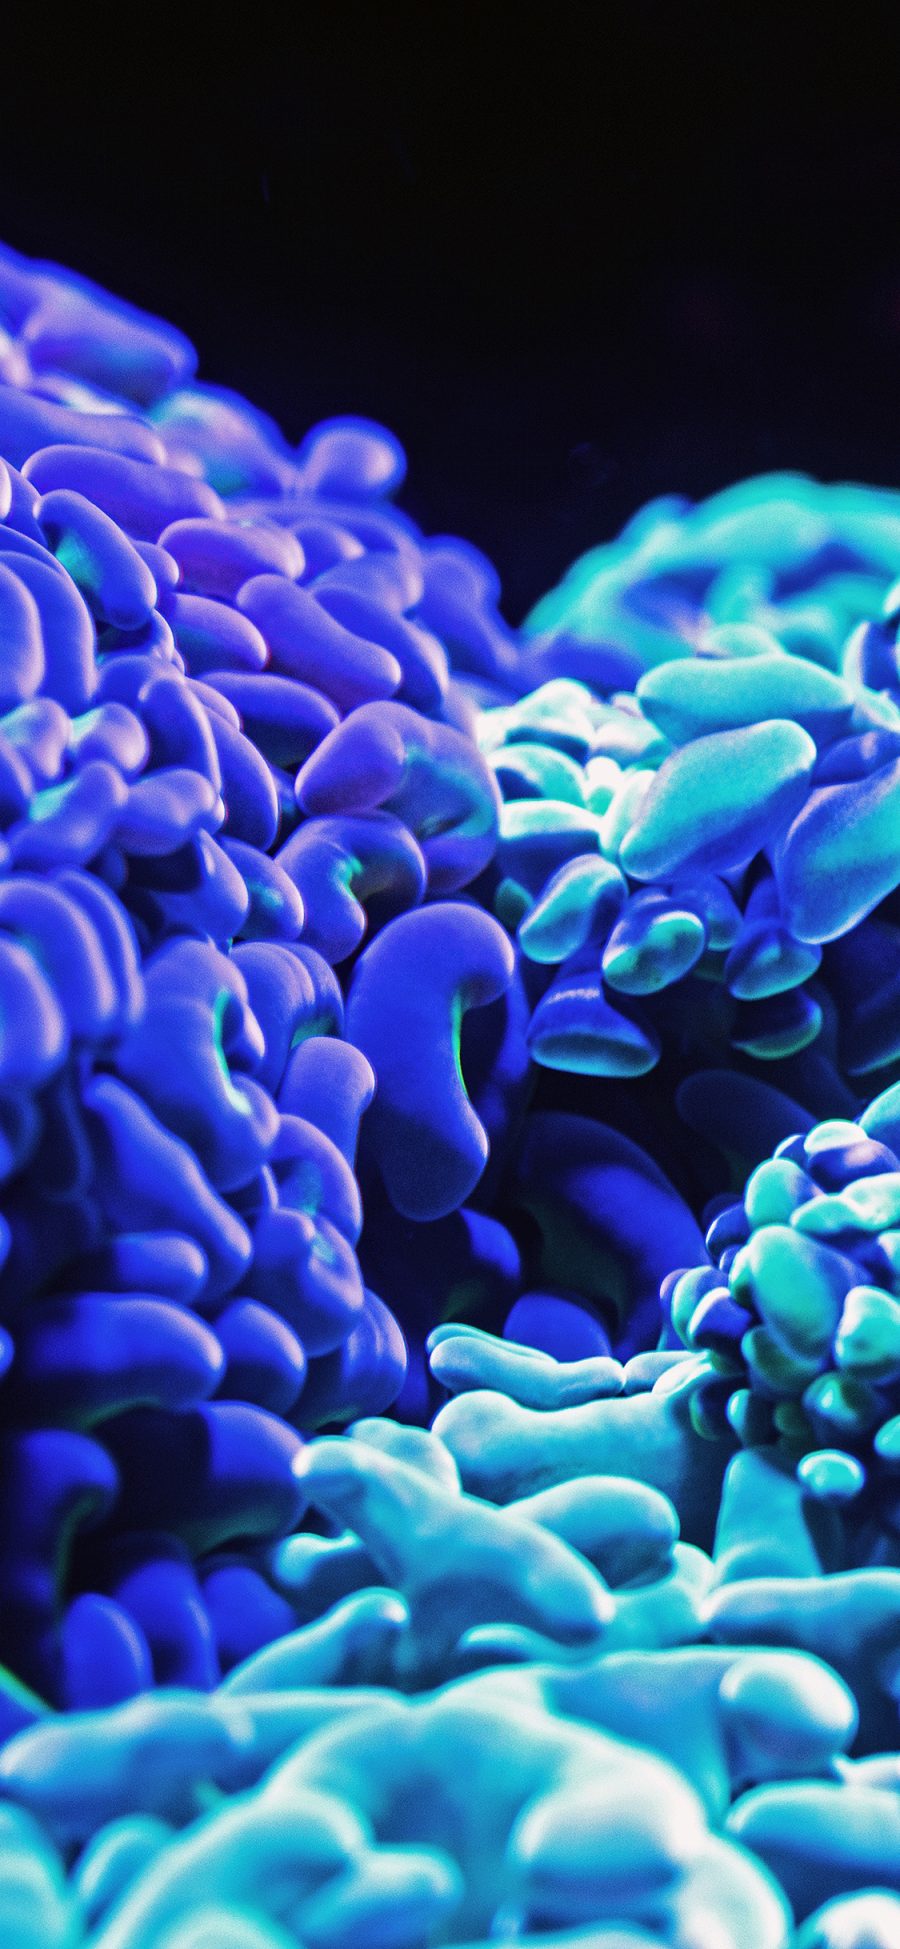 [2436×1125]珊瑚虫 荧光 密集 单细胞生物 苹果手机壁纸图片